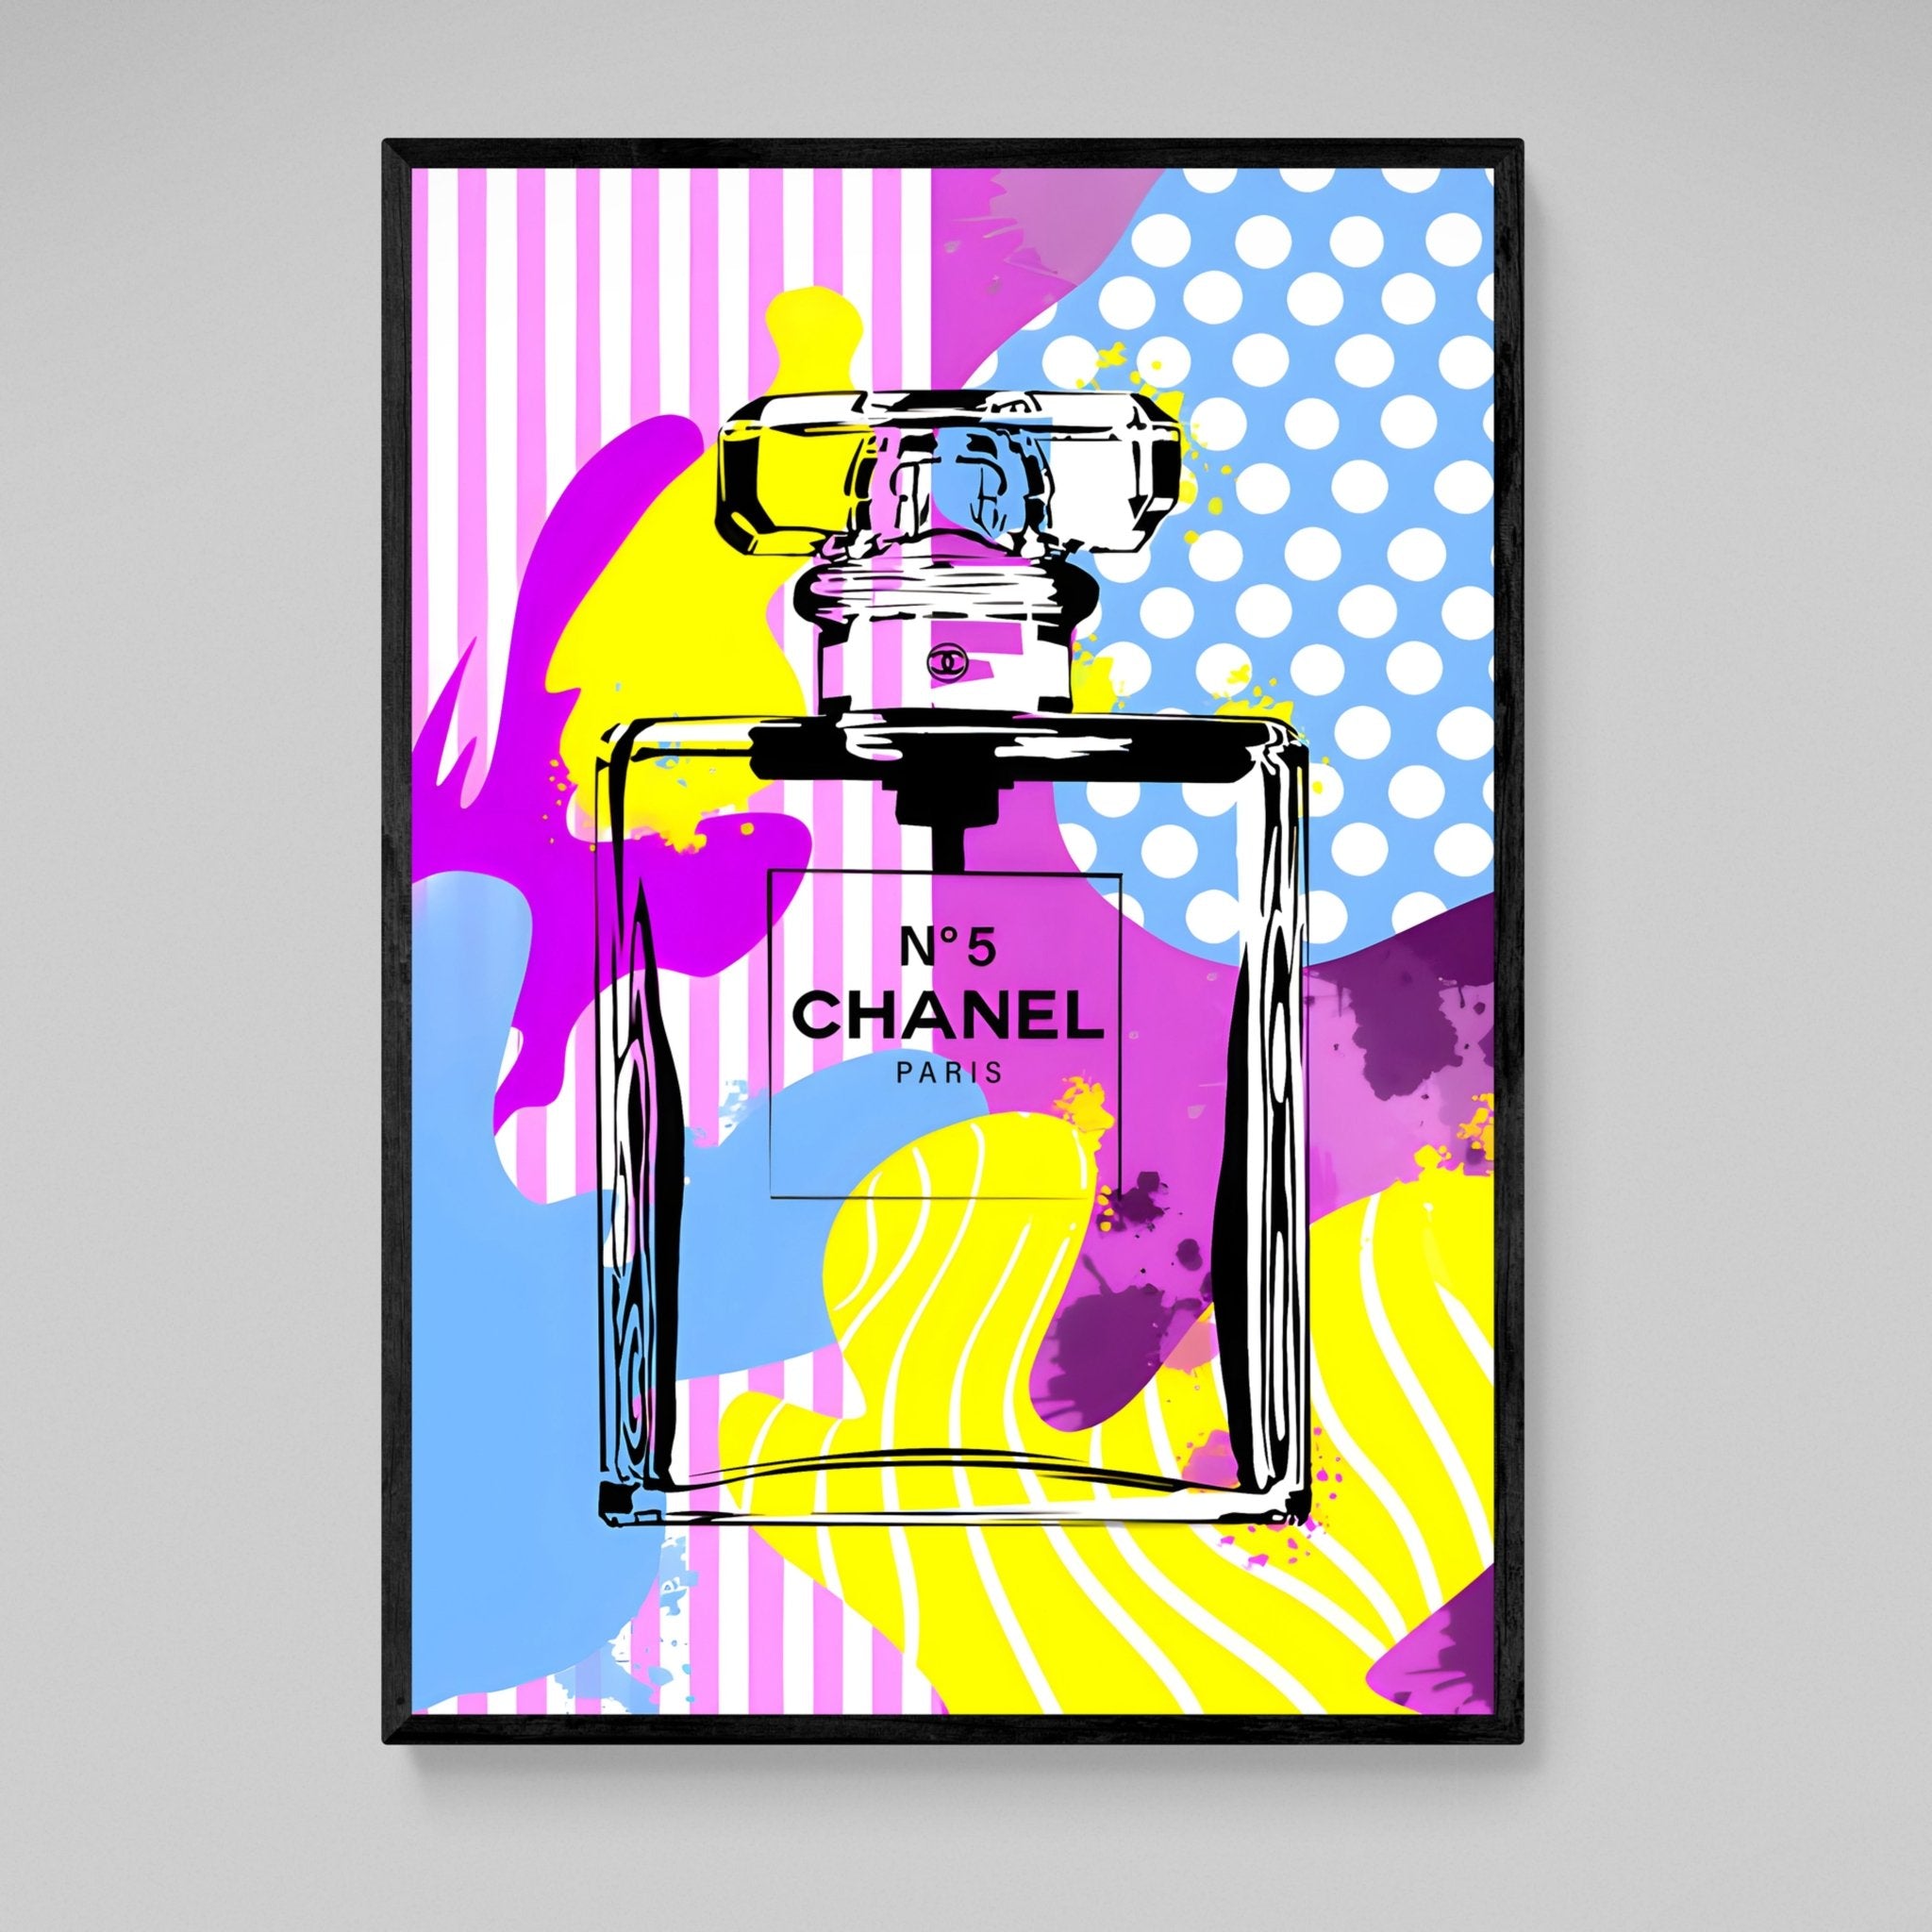 Artmazing Chanel Tableau multicolore, Image Chanel, Images d'art S, Images modernes